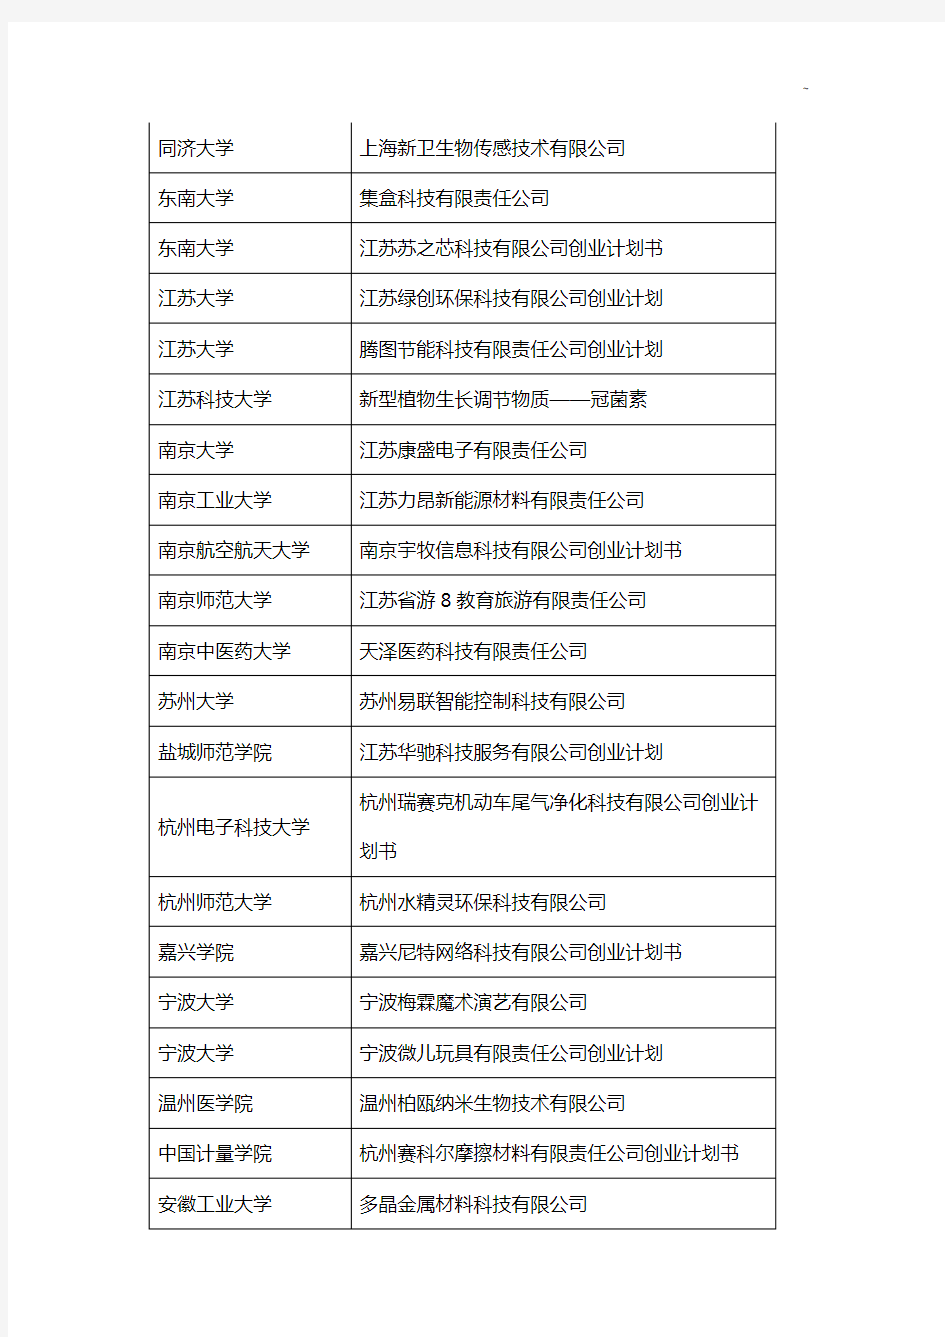 第八届挑战杯中国大学生创业计划竞赛金奖作品名单资料